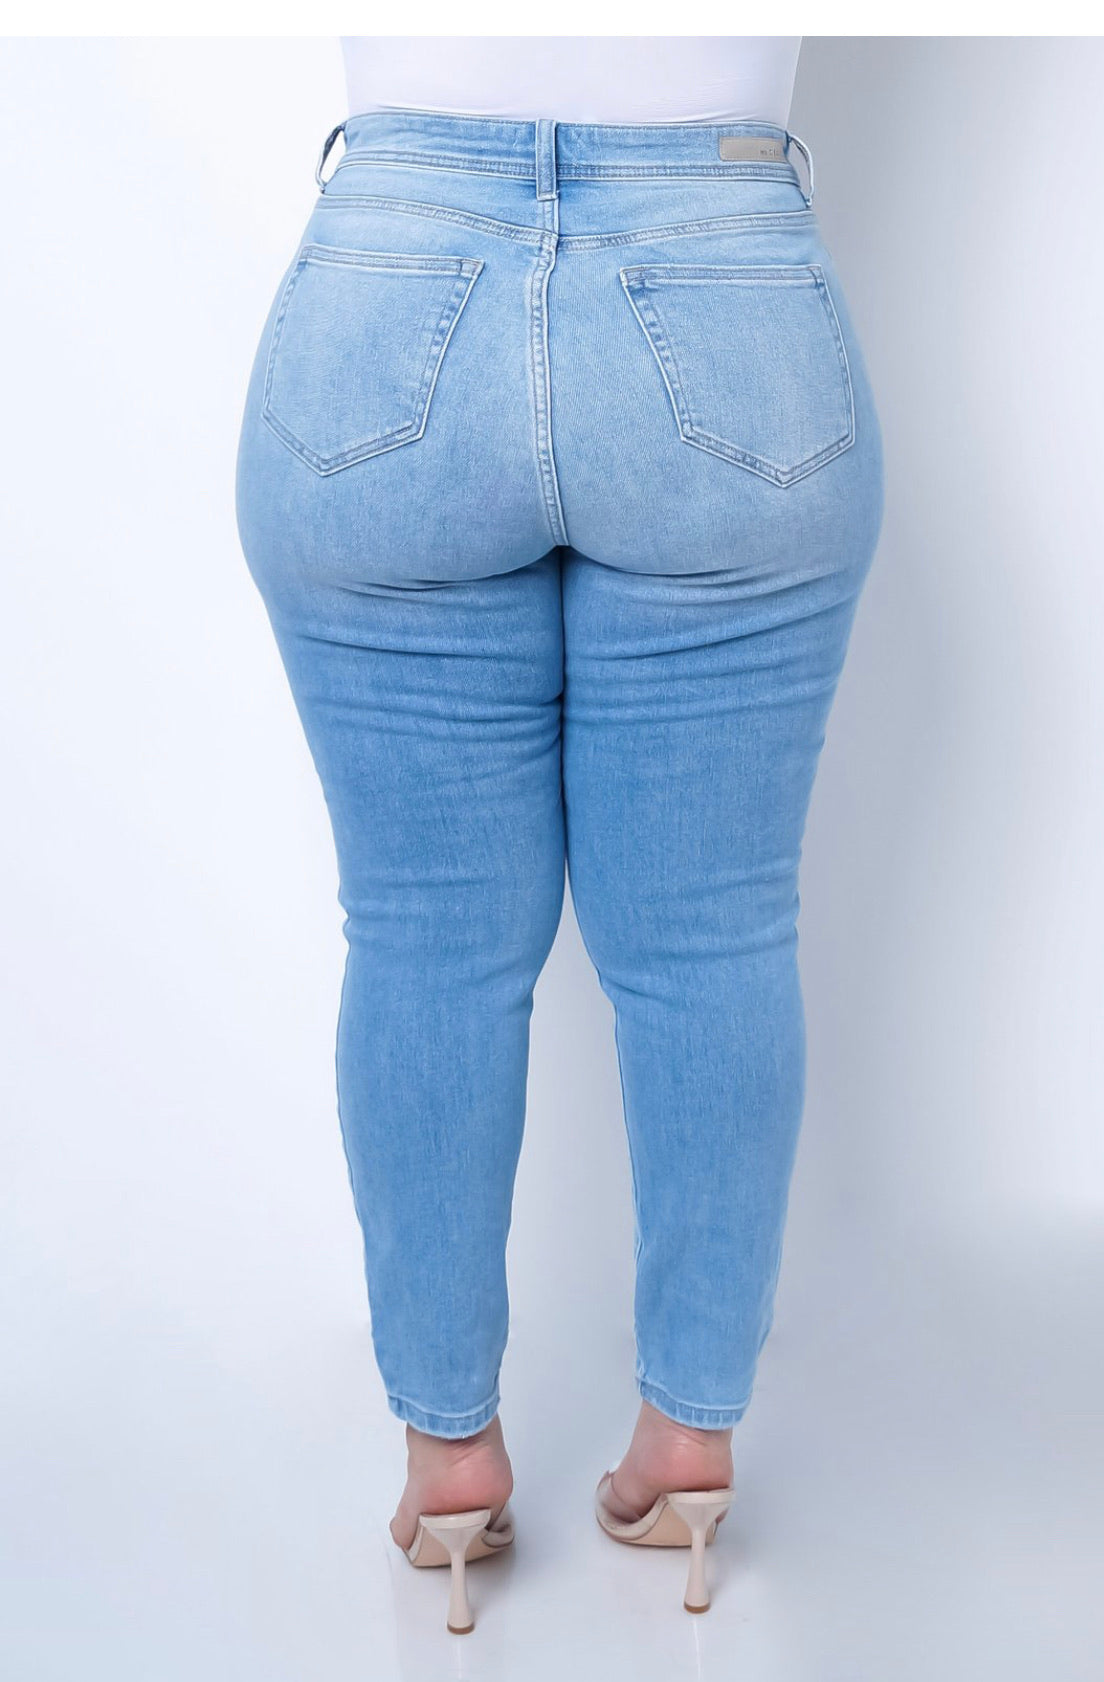 Plus Size Monique Jeans - Light Wash